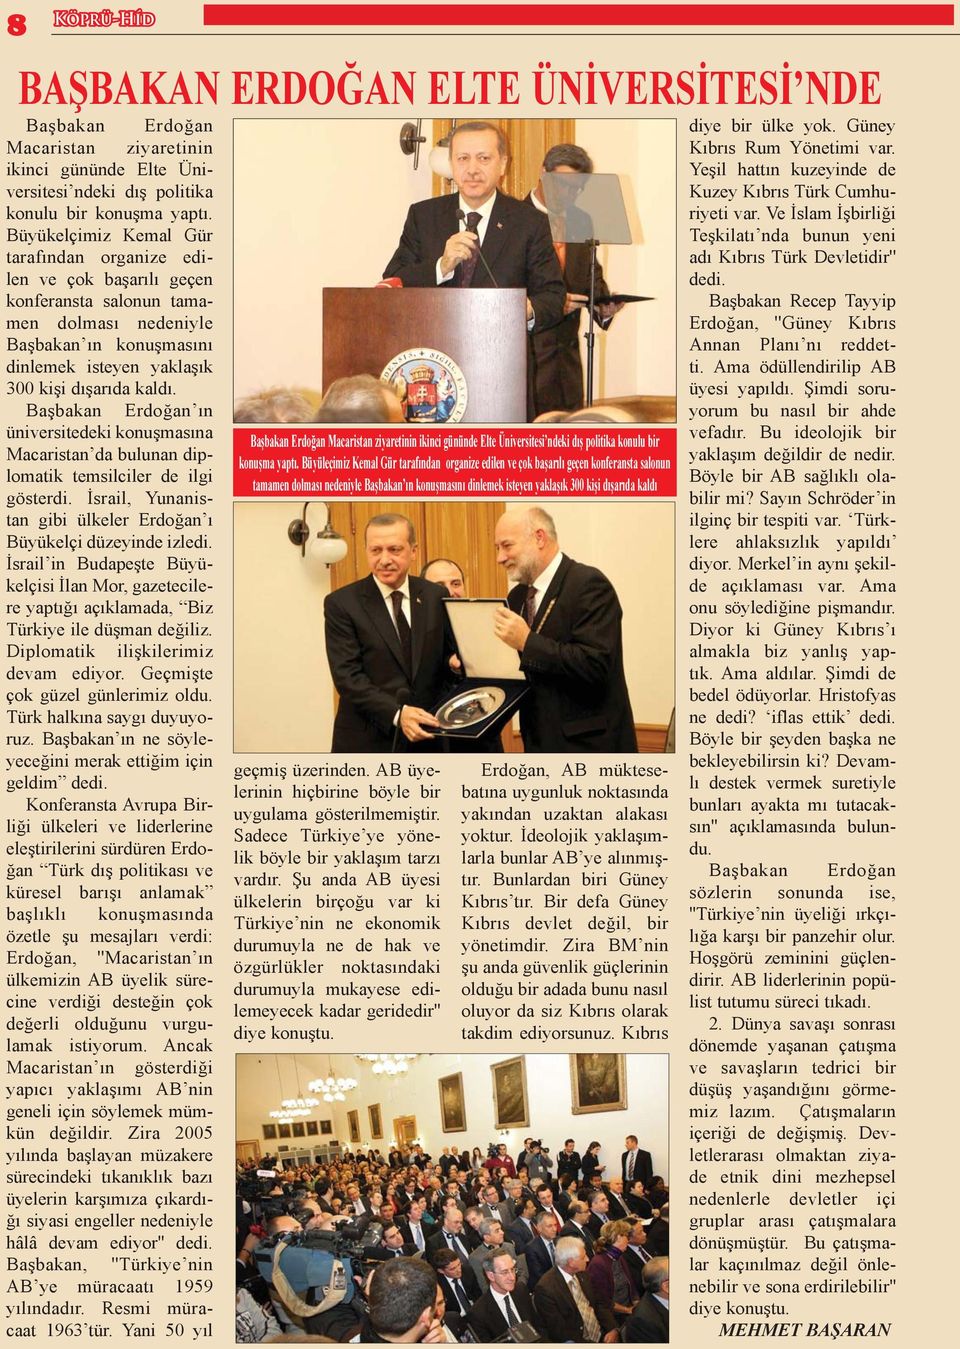 Başbakan Erdoğan ın üniversitedeki konuşmasına Macaristan da bulunan diplomatik temsilciler de ilgi gösterdi. İsrail, Yunanistan gibi ülkeler Erdoğan ı Büyükelçi düzeyinde izledi.